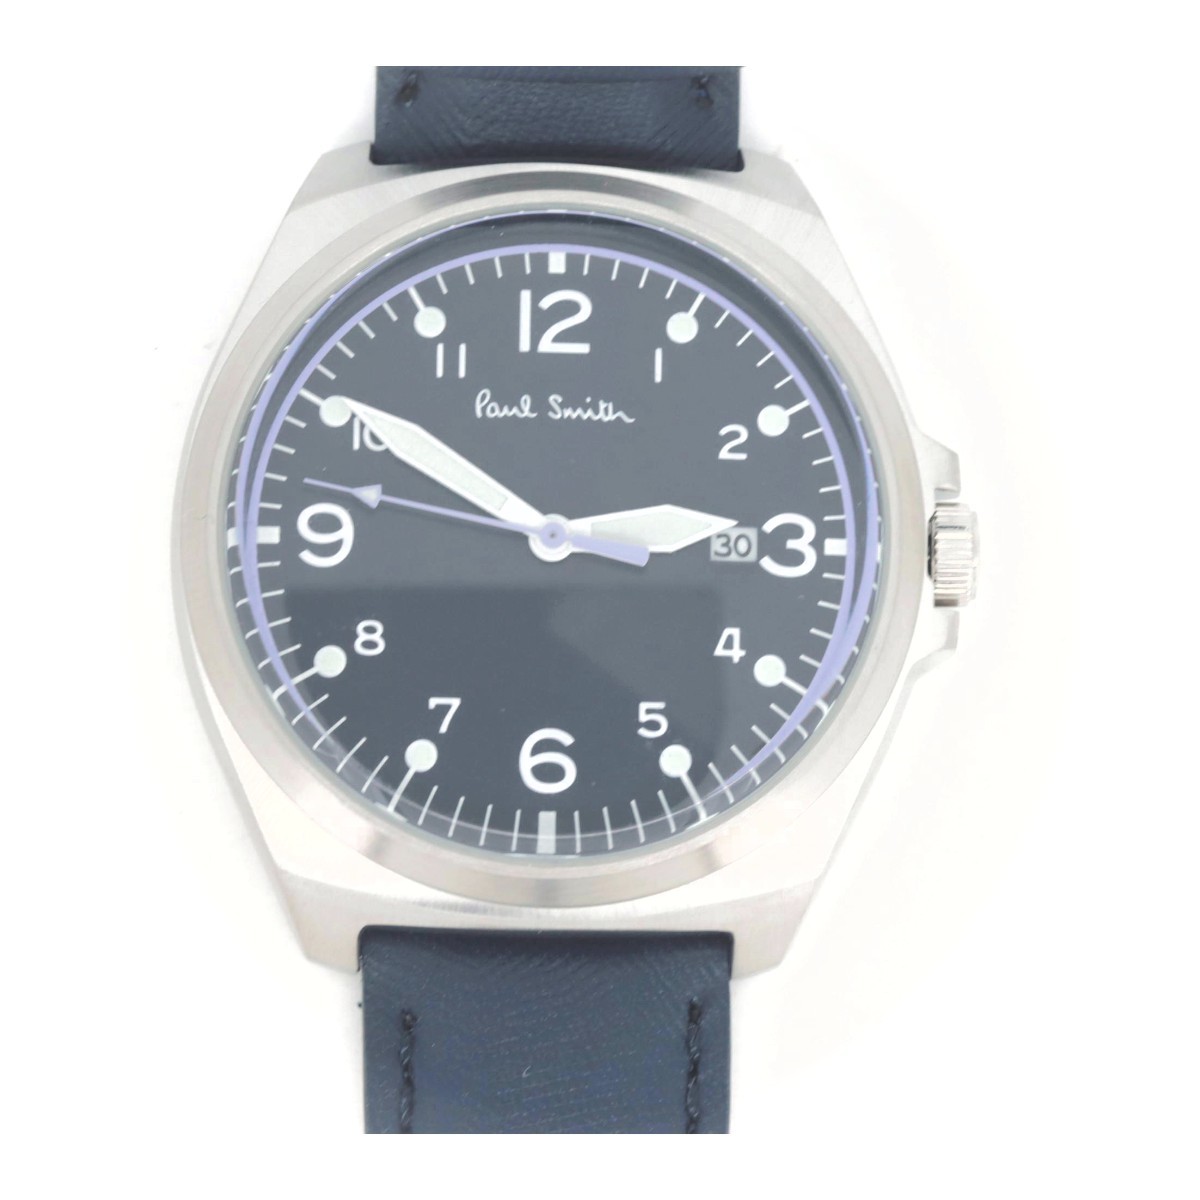 ポールスミス クローズアイズ BV1-216 メンズ腕時計 質屋出品